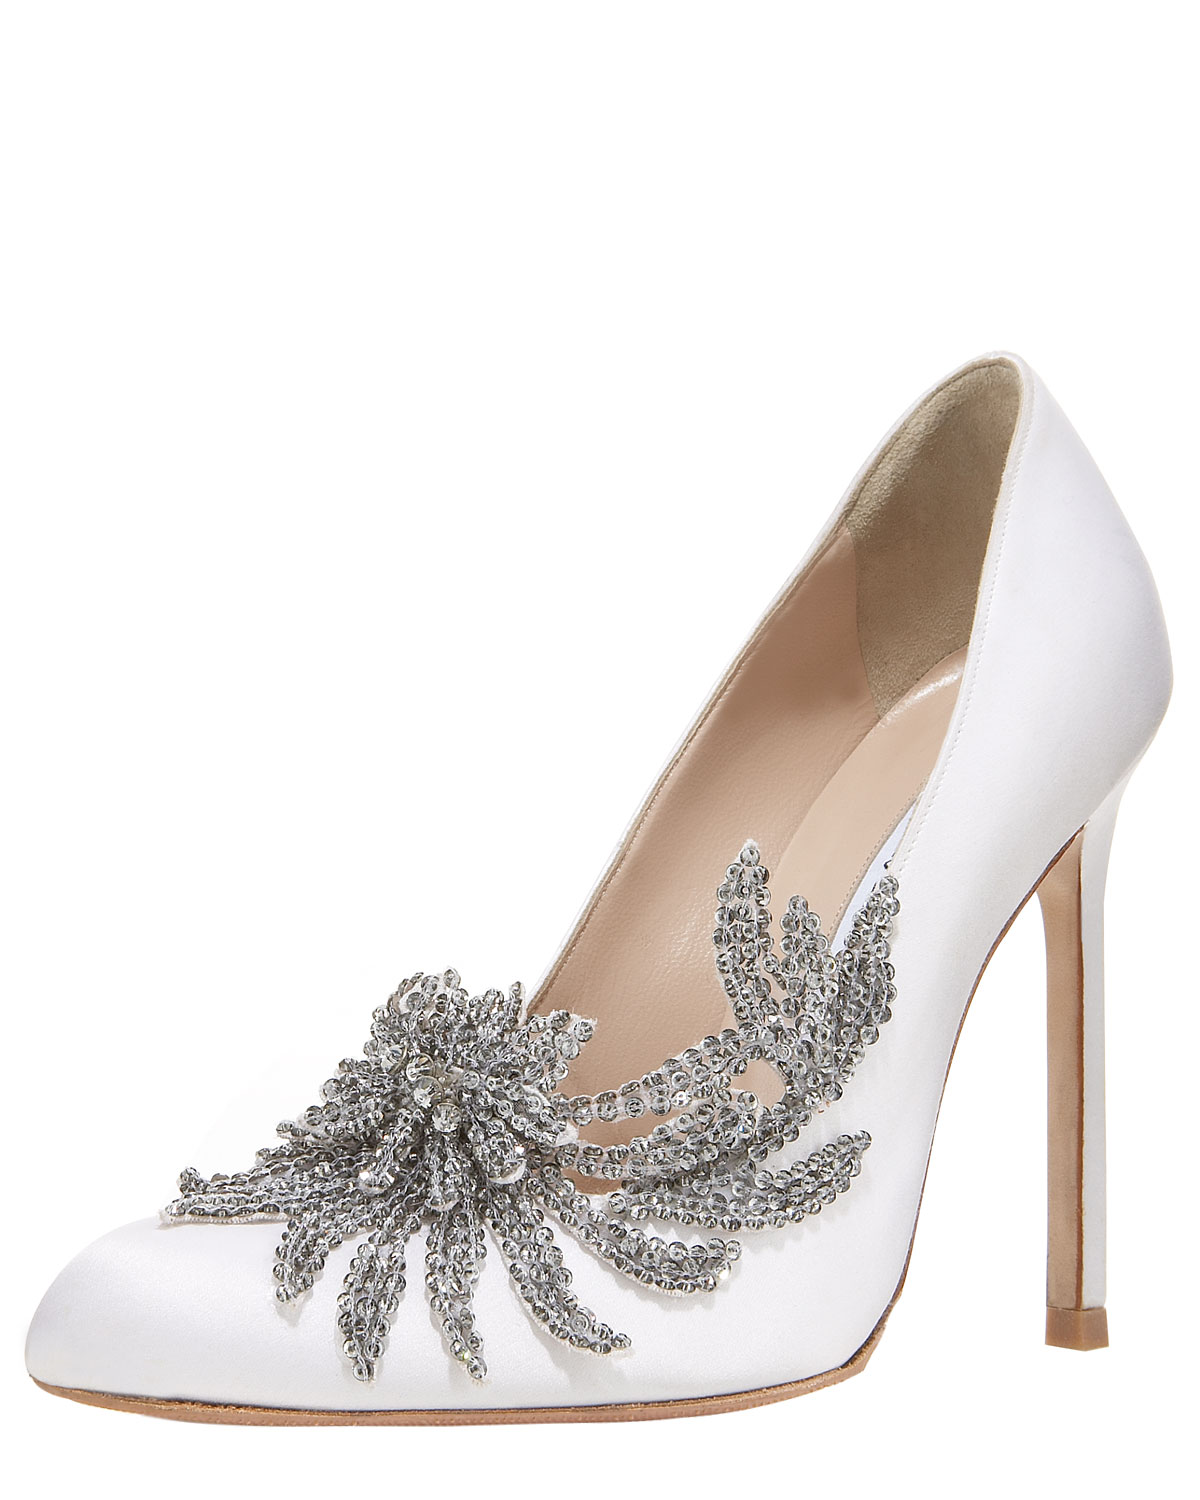 Swan Embellished Pump by Manolo Blahnik Luxury Wedding Shoes 